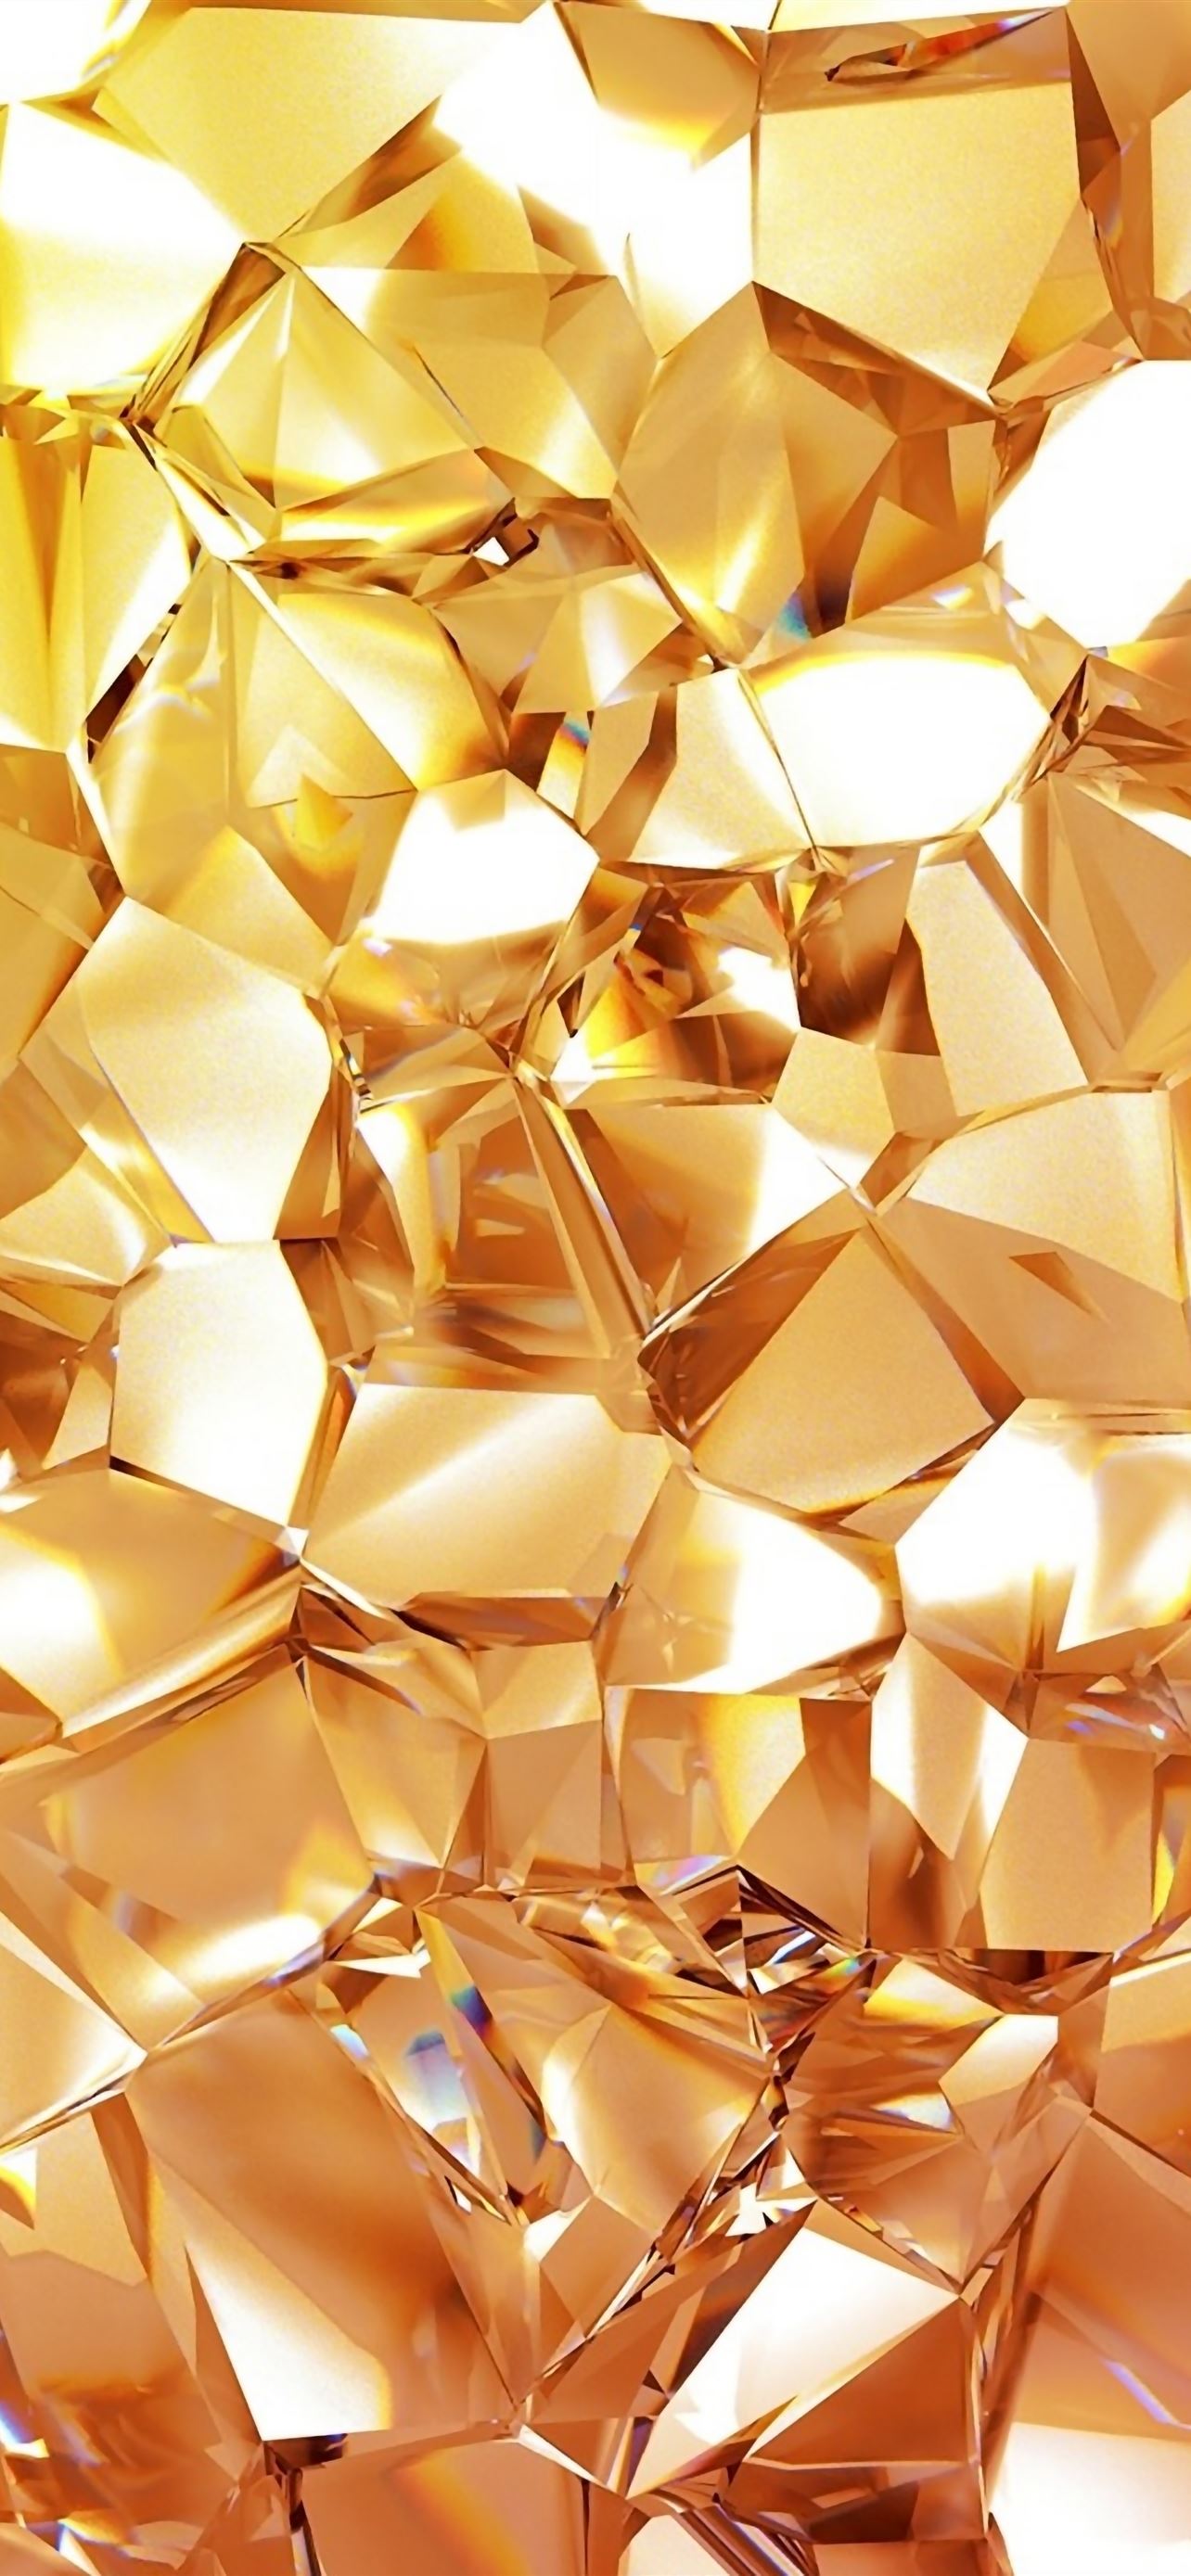 Làm mới và thay đổi hình nền cho điện thoại của bạn mỗi ngày với những hình nền Geometric Gold Diamond iPhone wallpapers tuyệt đẹp. Hãy xem hình ảnh liên quan đến từ khóa này ngay bây giờ để tìm kiếm sự khác biệt và sáng tạo cho thiết bị của bạn.